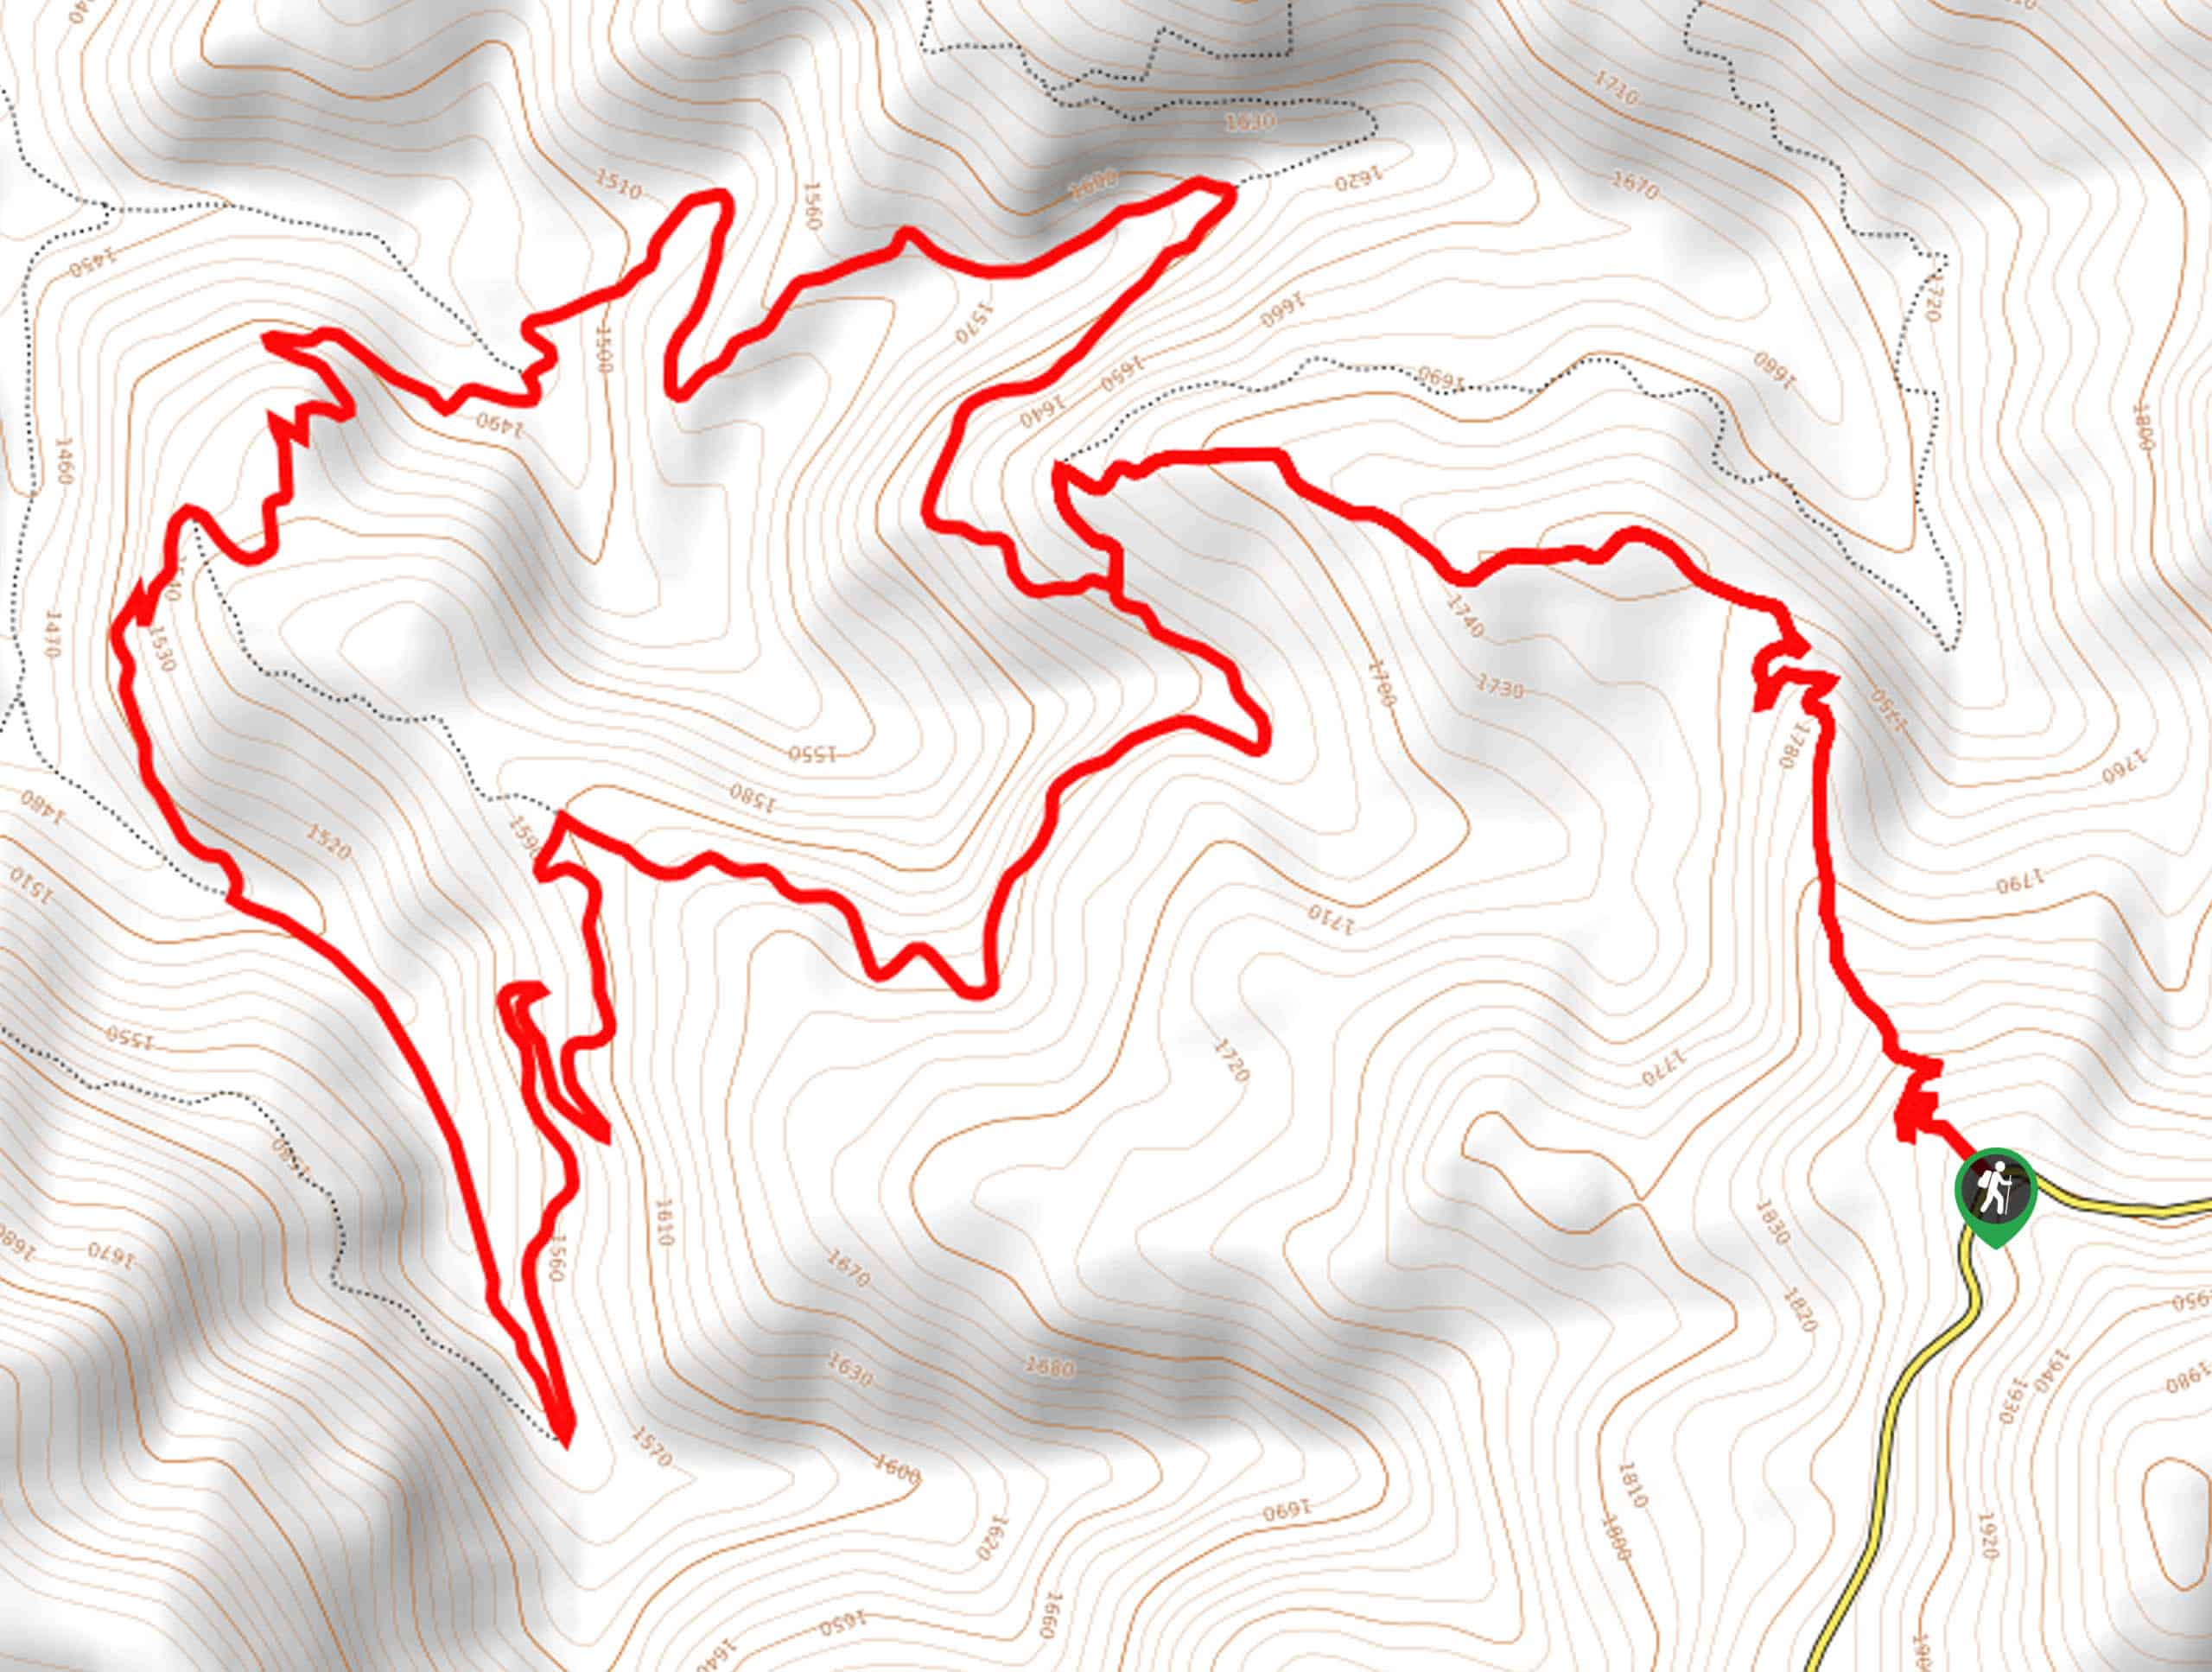 Pat's Trail Loop Map